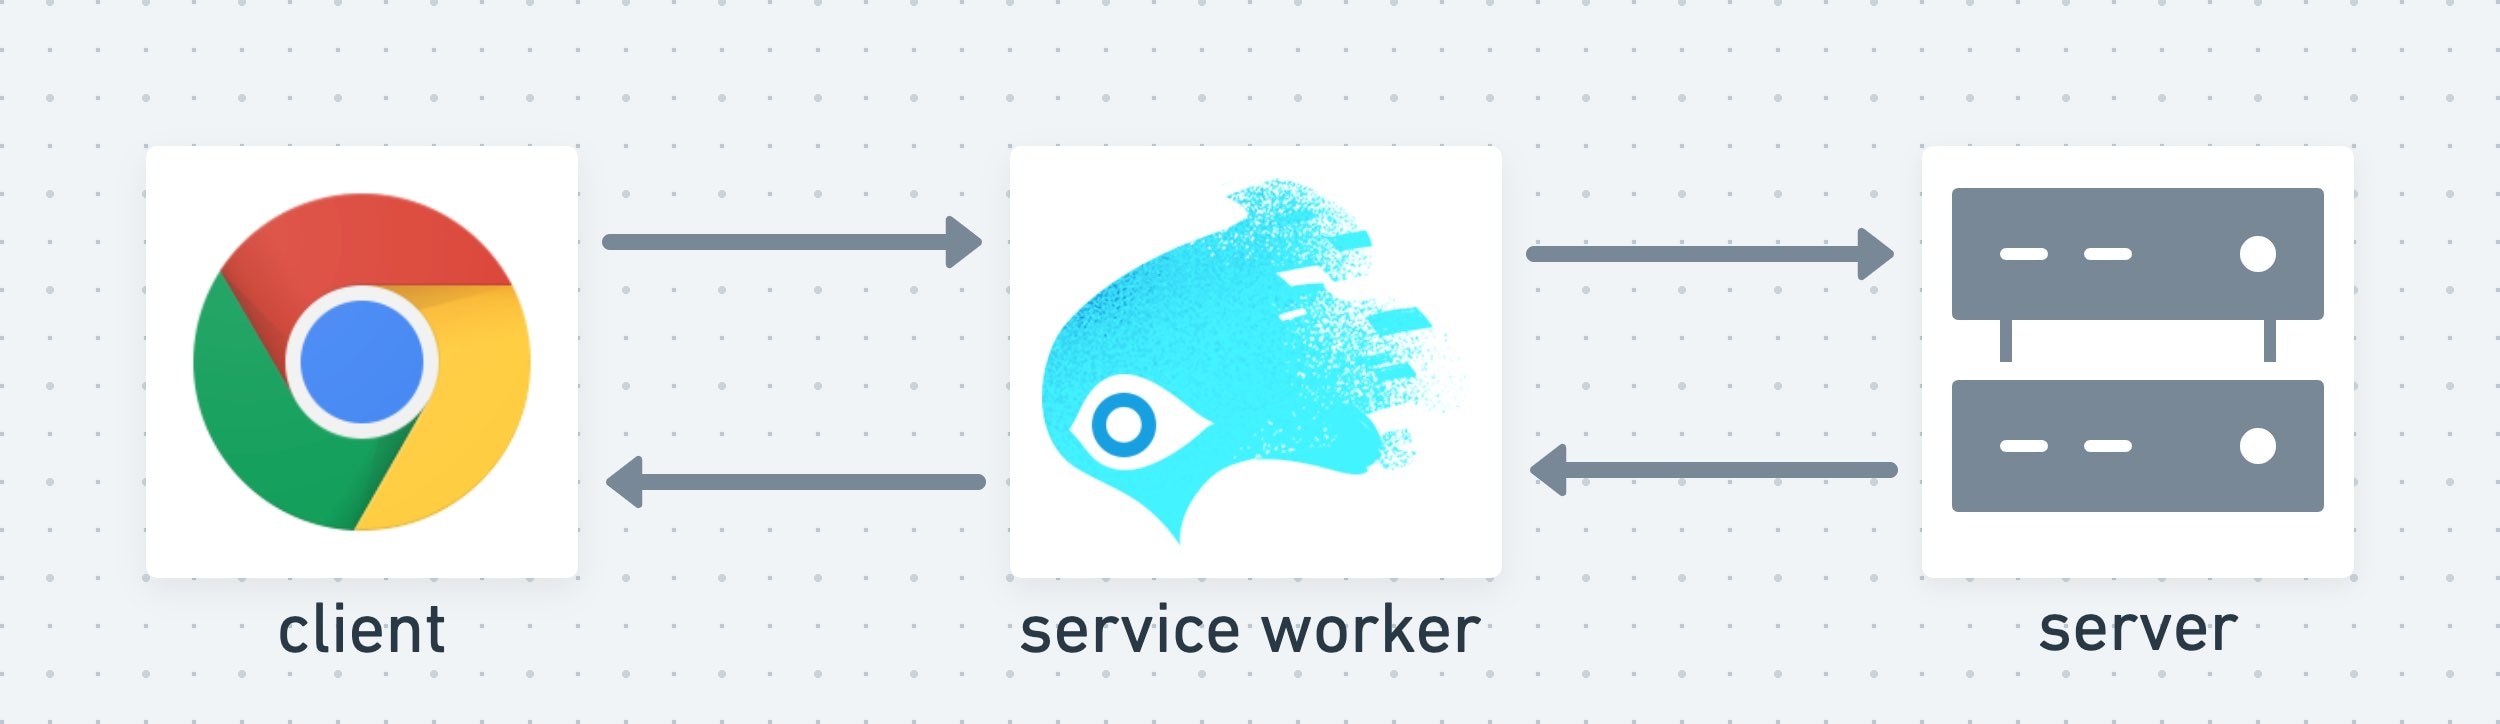 Service Worker ทำหน้าที่เป็นชั้นกลางระหว่างไคลเอ็นต์กับเซิร์ฟเวอร์